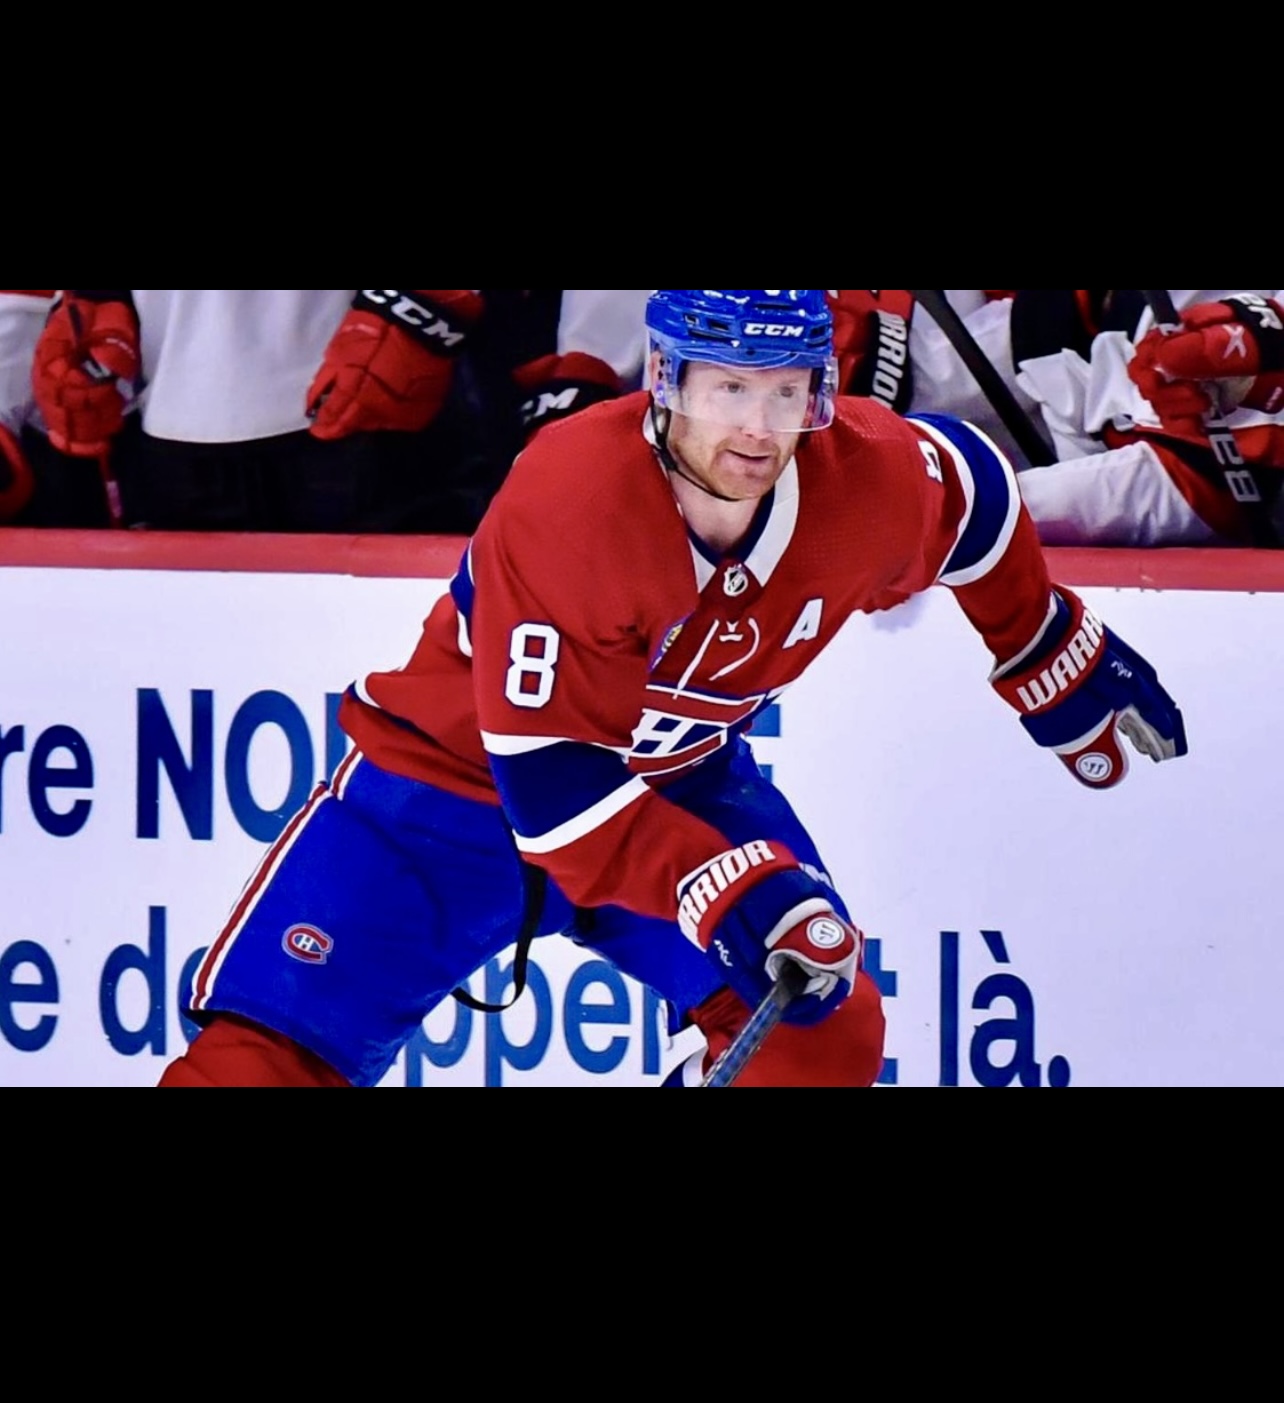 Un joueur de hockey Canadien se réjouit en patinant sur la glace.